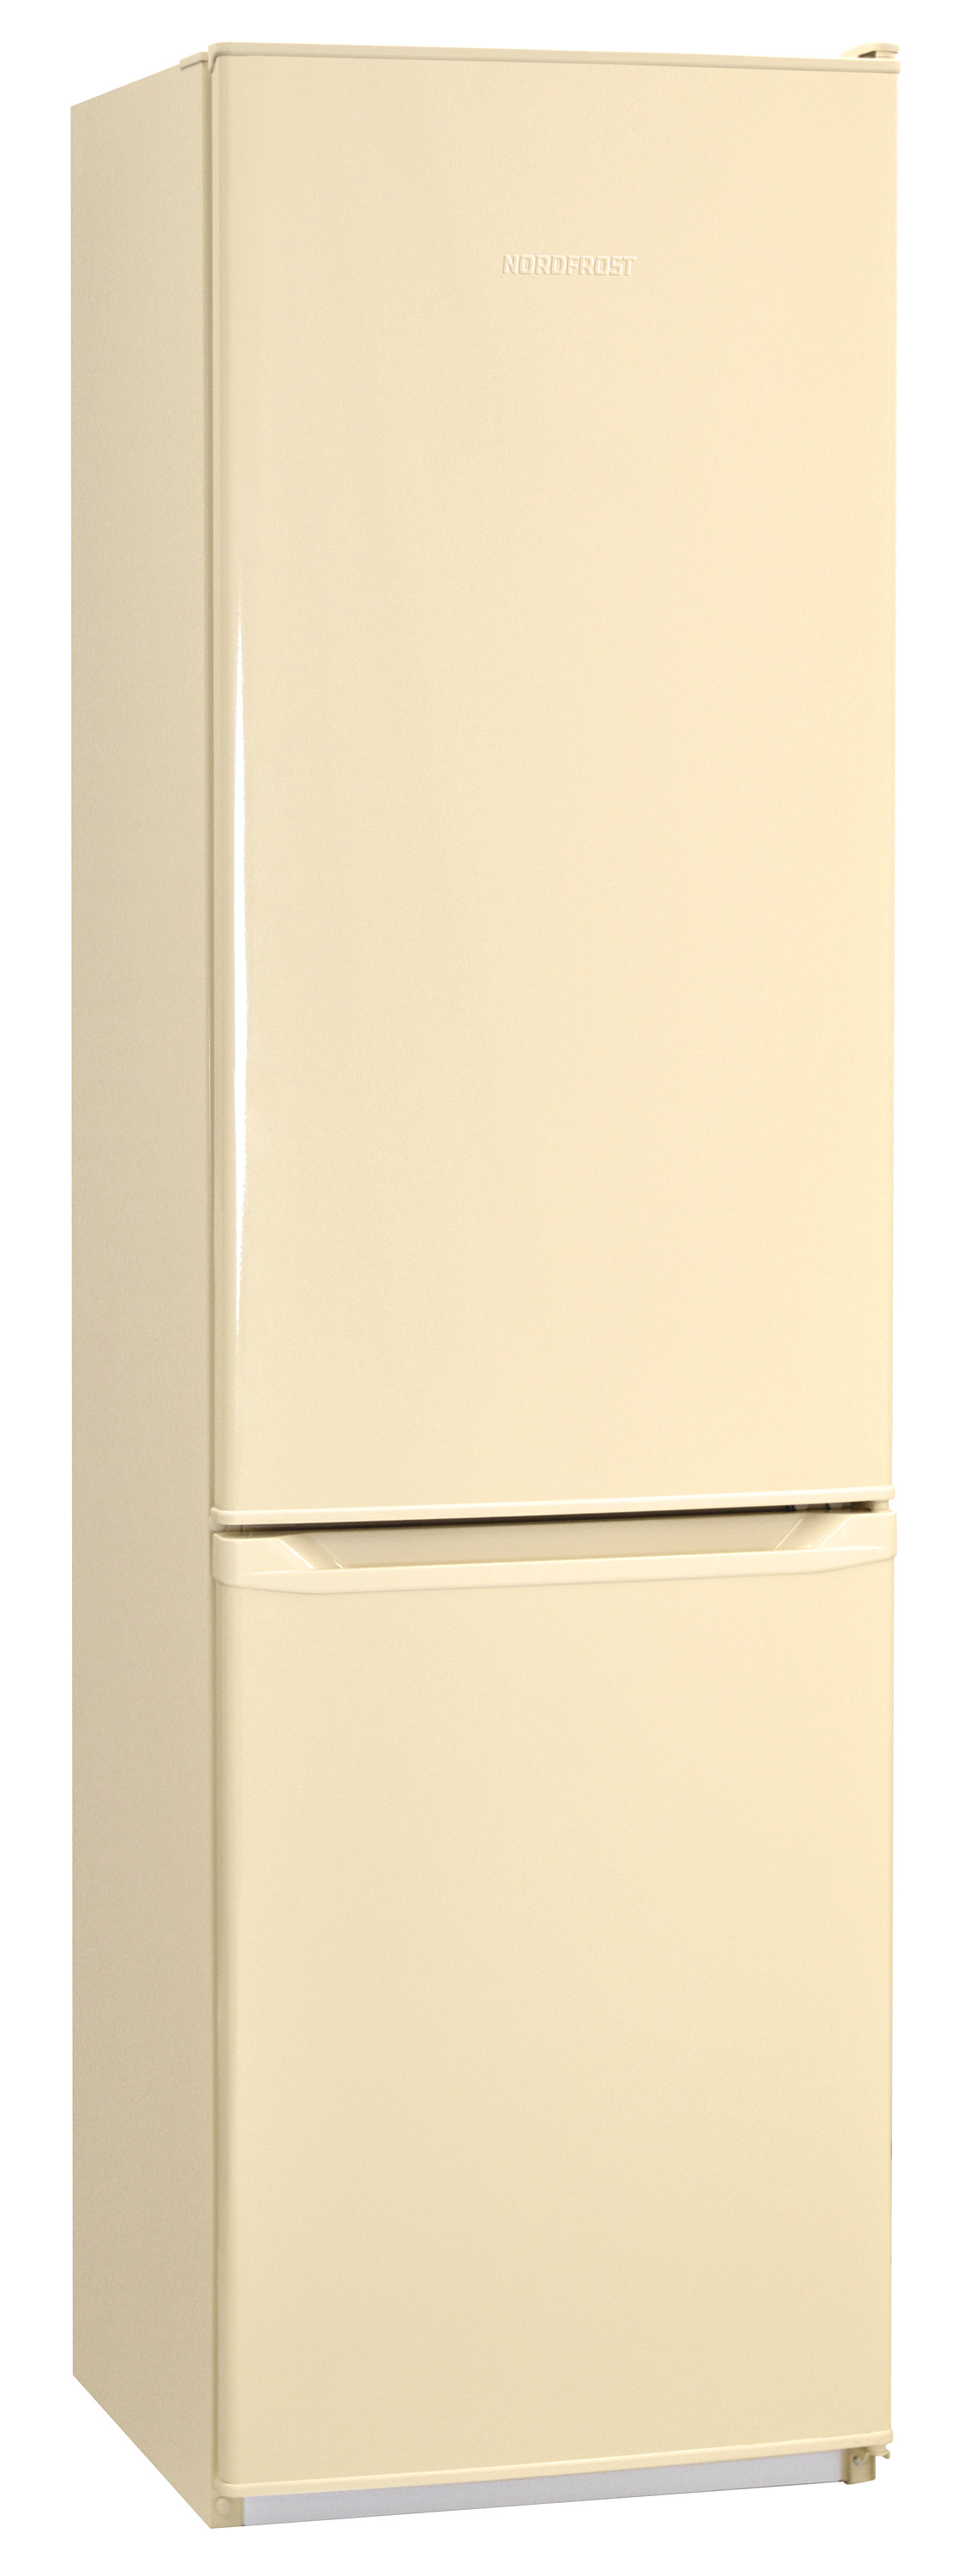 Холодильник NORDFROST NRB 154NF 732																		 — описание, фото, цены в интернет-магазине Премьер Техно